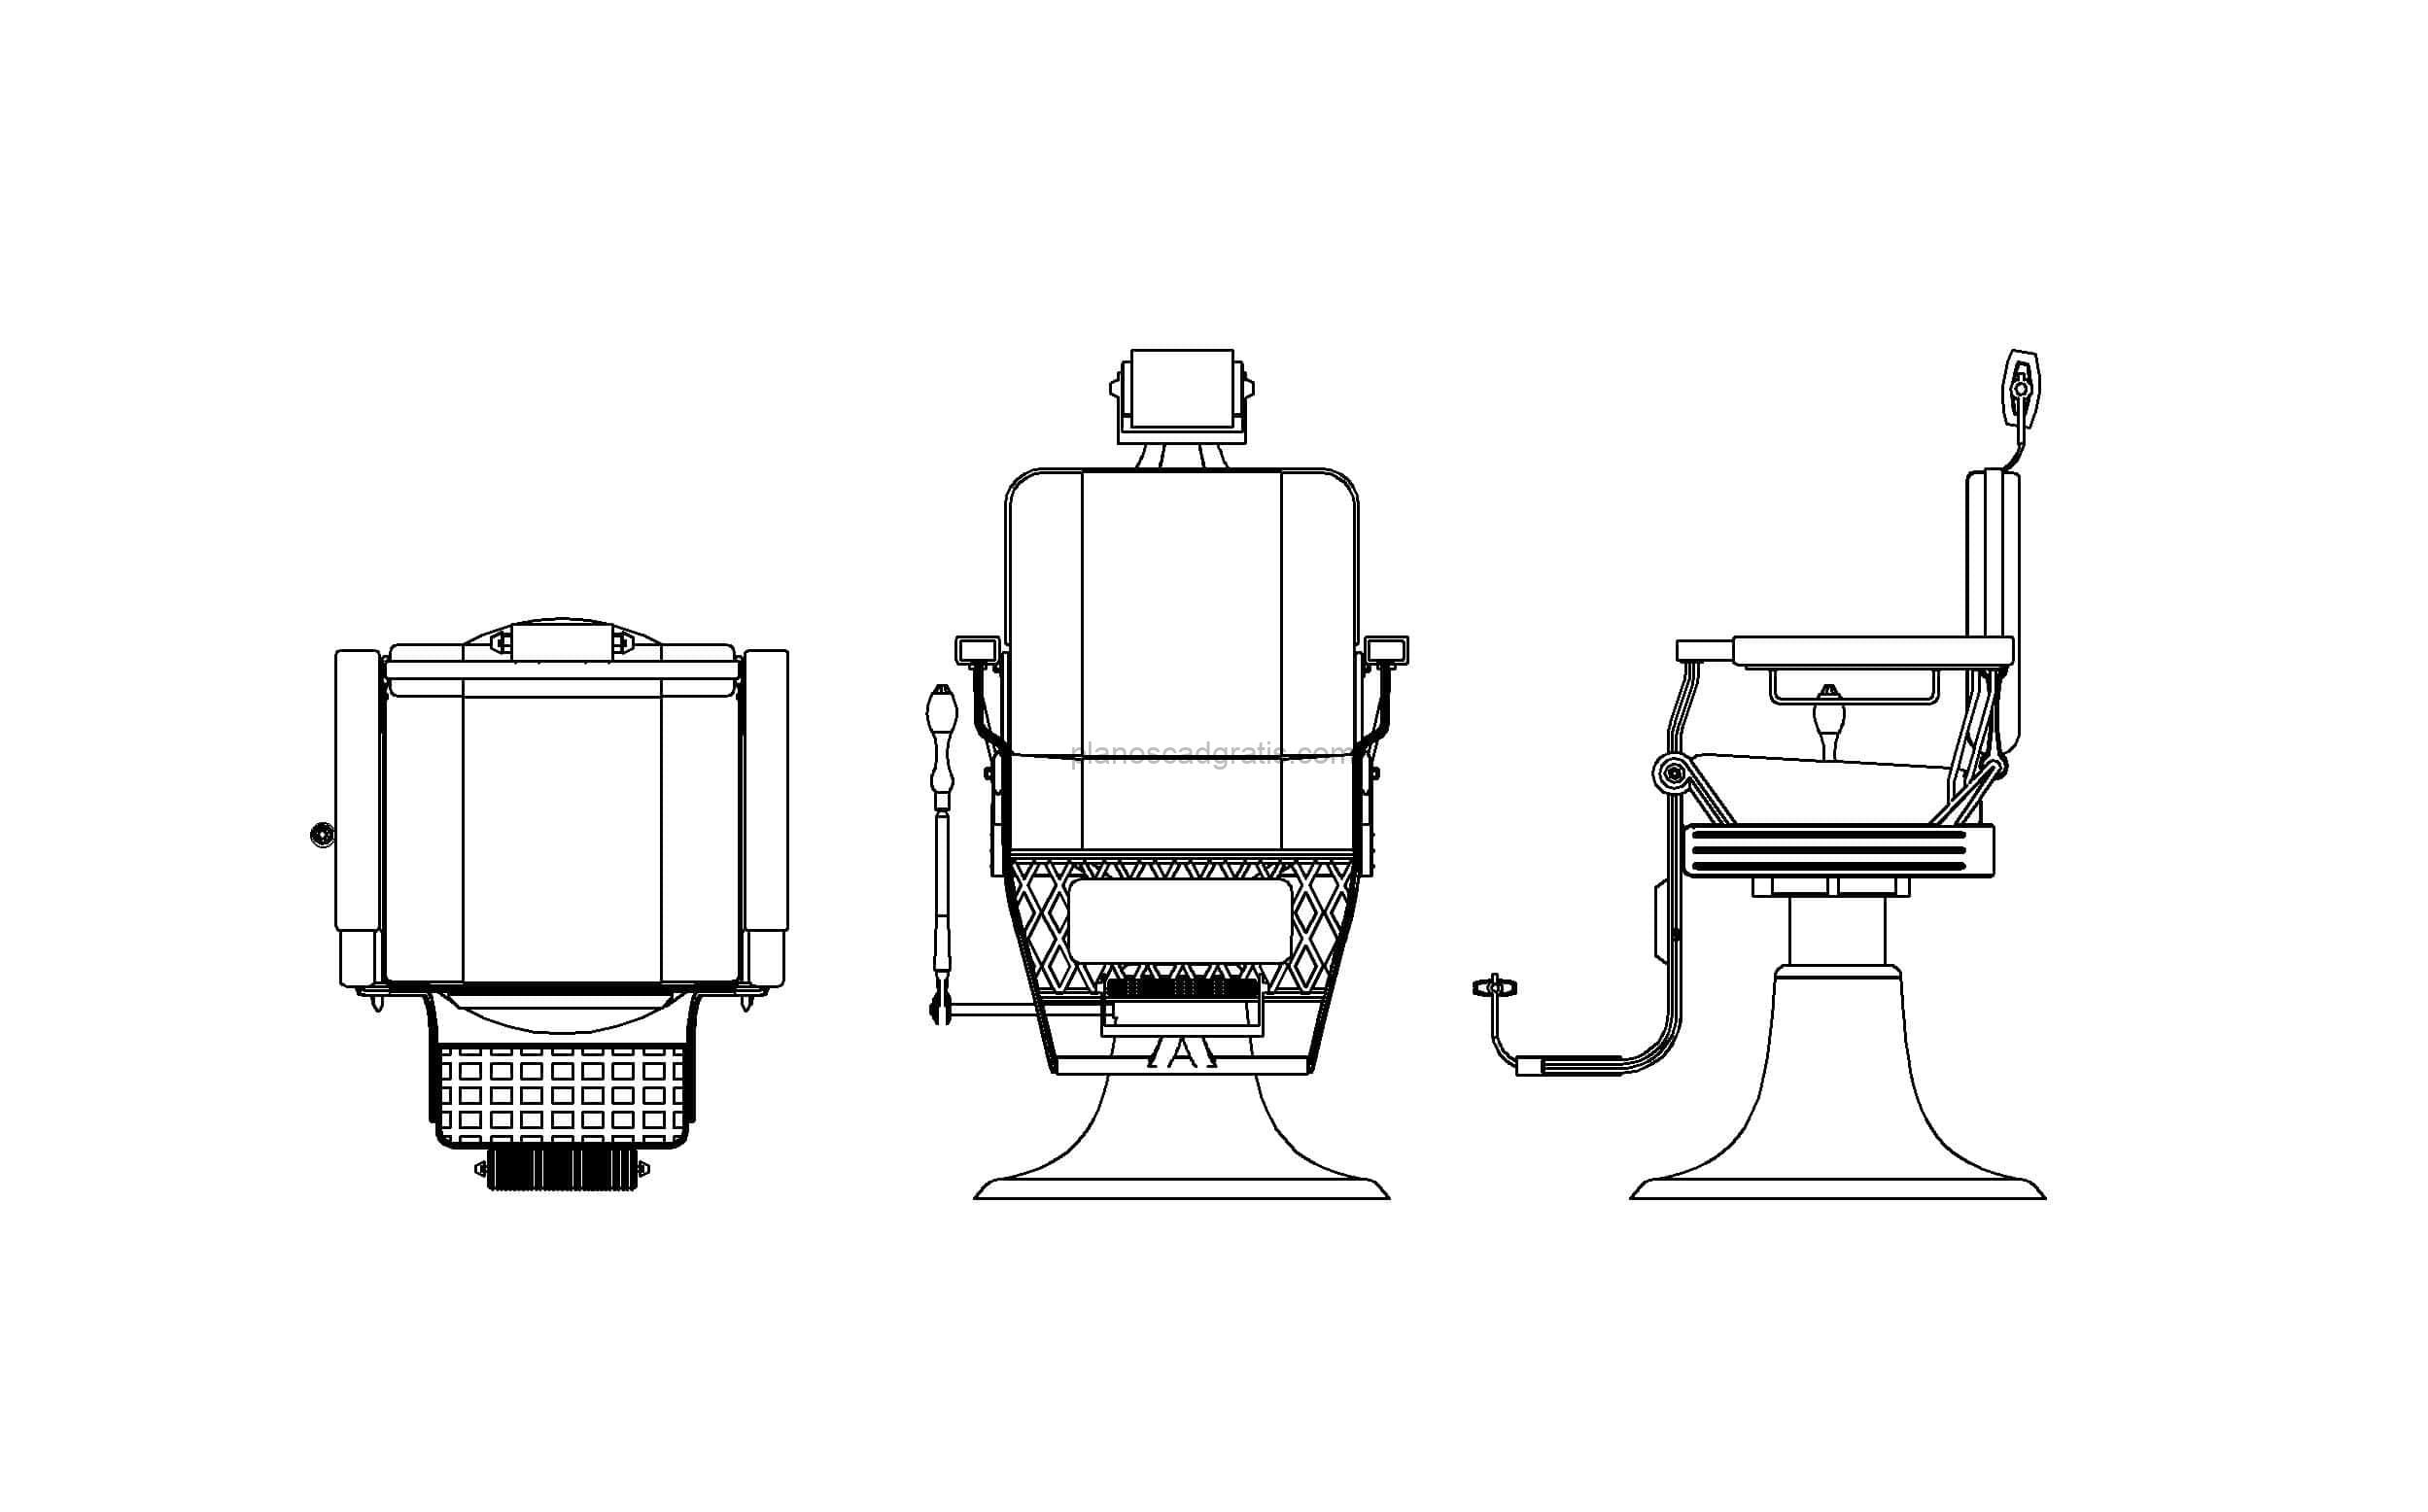 dibujo de autocad de silla de peluquero, vistas en planta y elevación, archivo dwg para descarga gratis